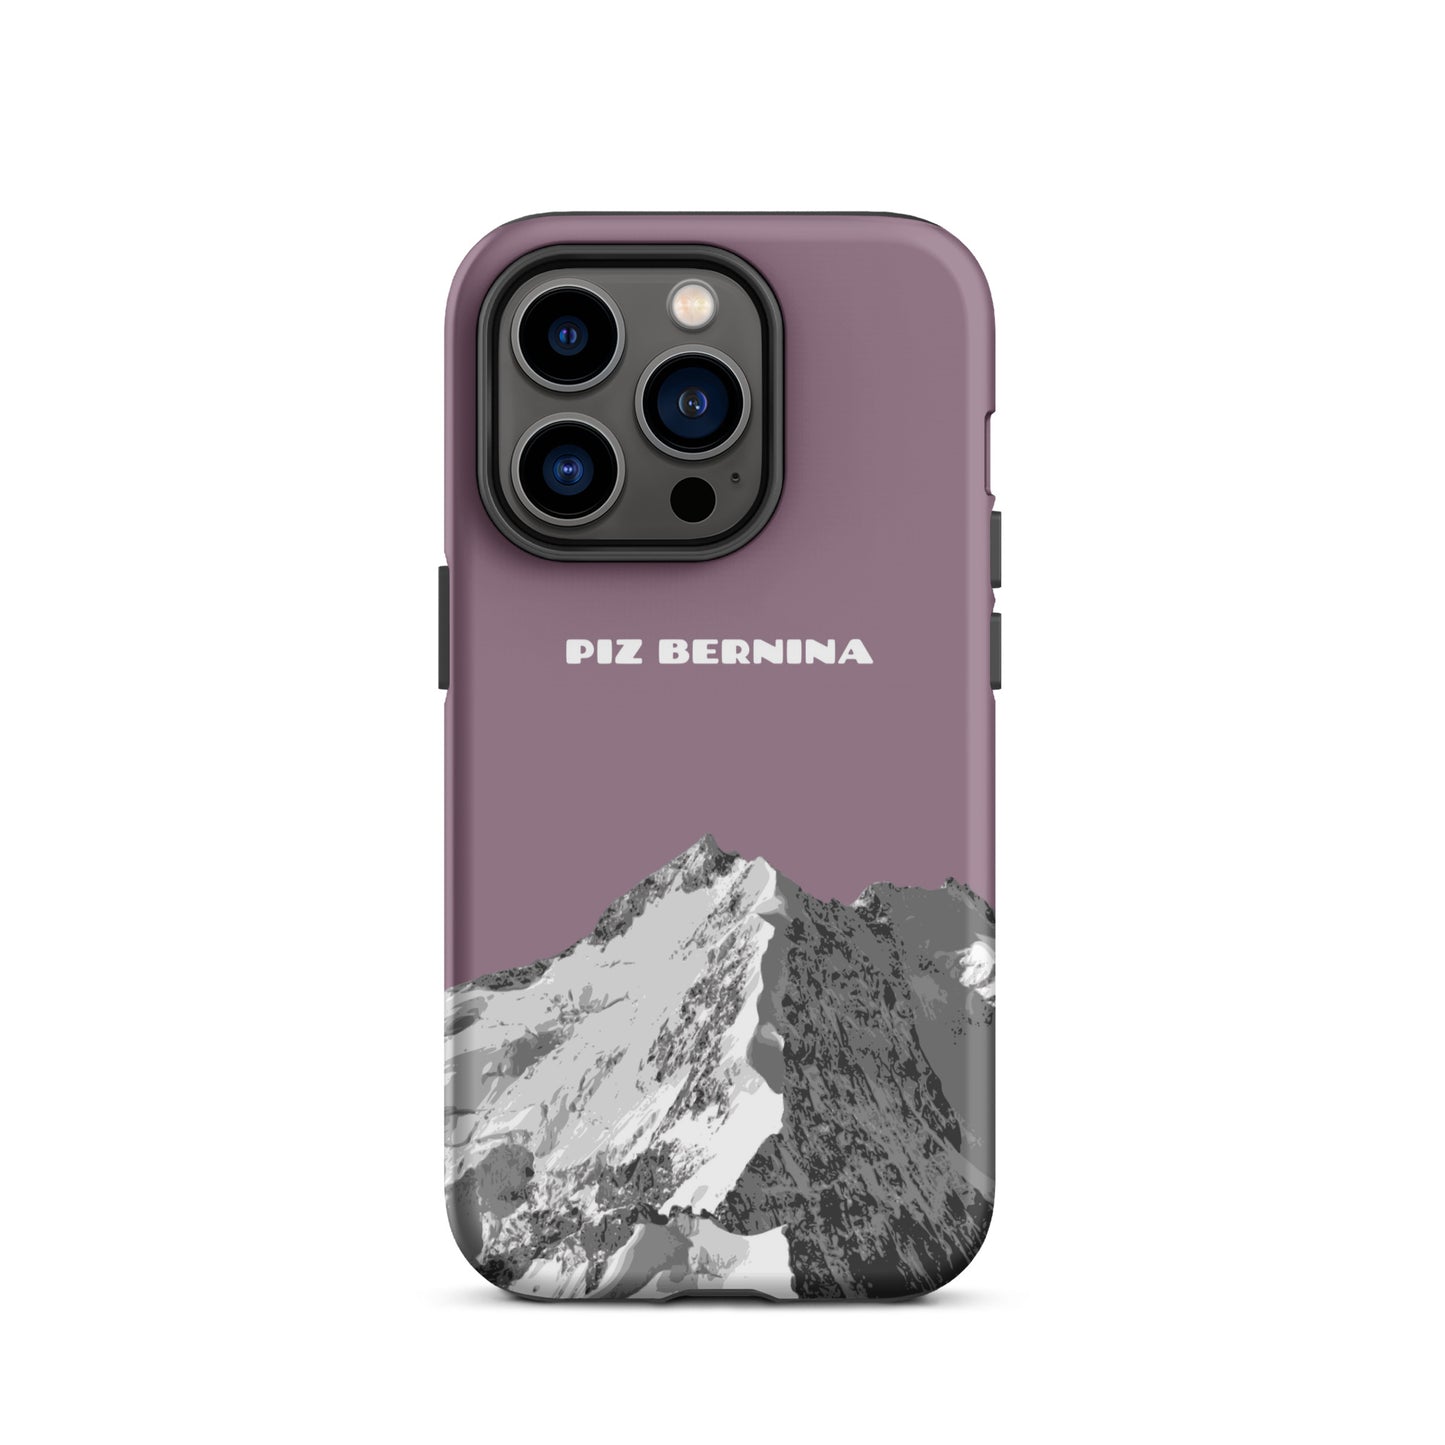 Hülle für das iPhone 14 Pro von Apple in der Farbe Pastellviolett, dass den Piz Bernina in Graubünden zeigt.